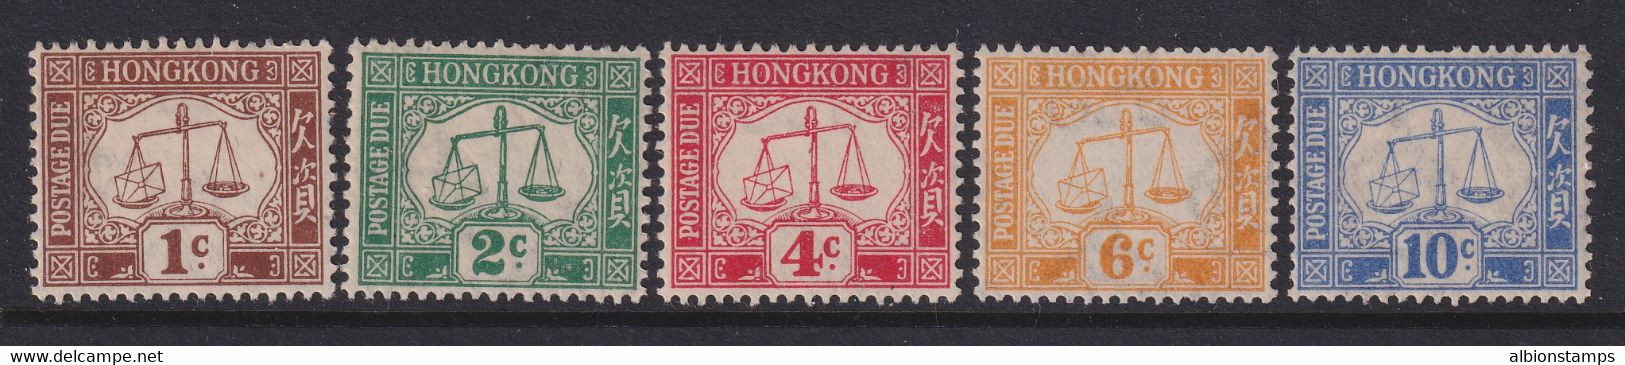 Hong Kong, Scott J1-J5 (SG D1-D5), MLH - Postage Due